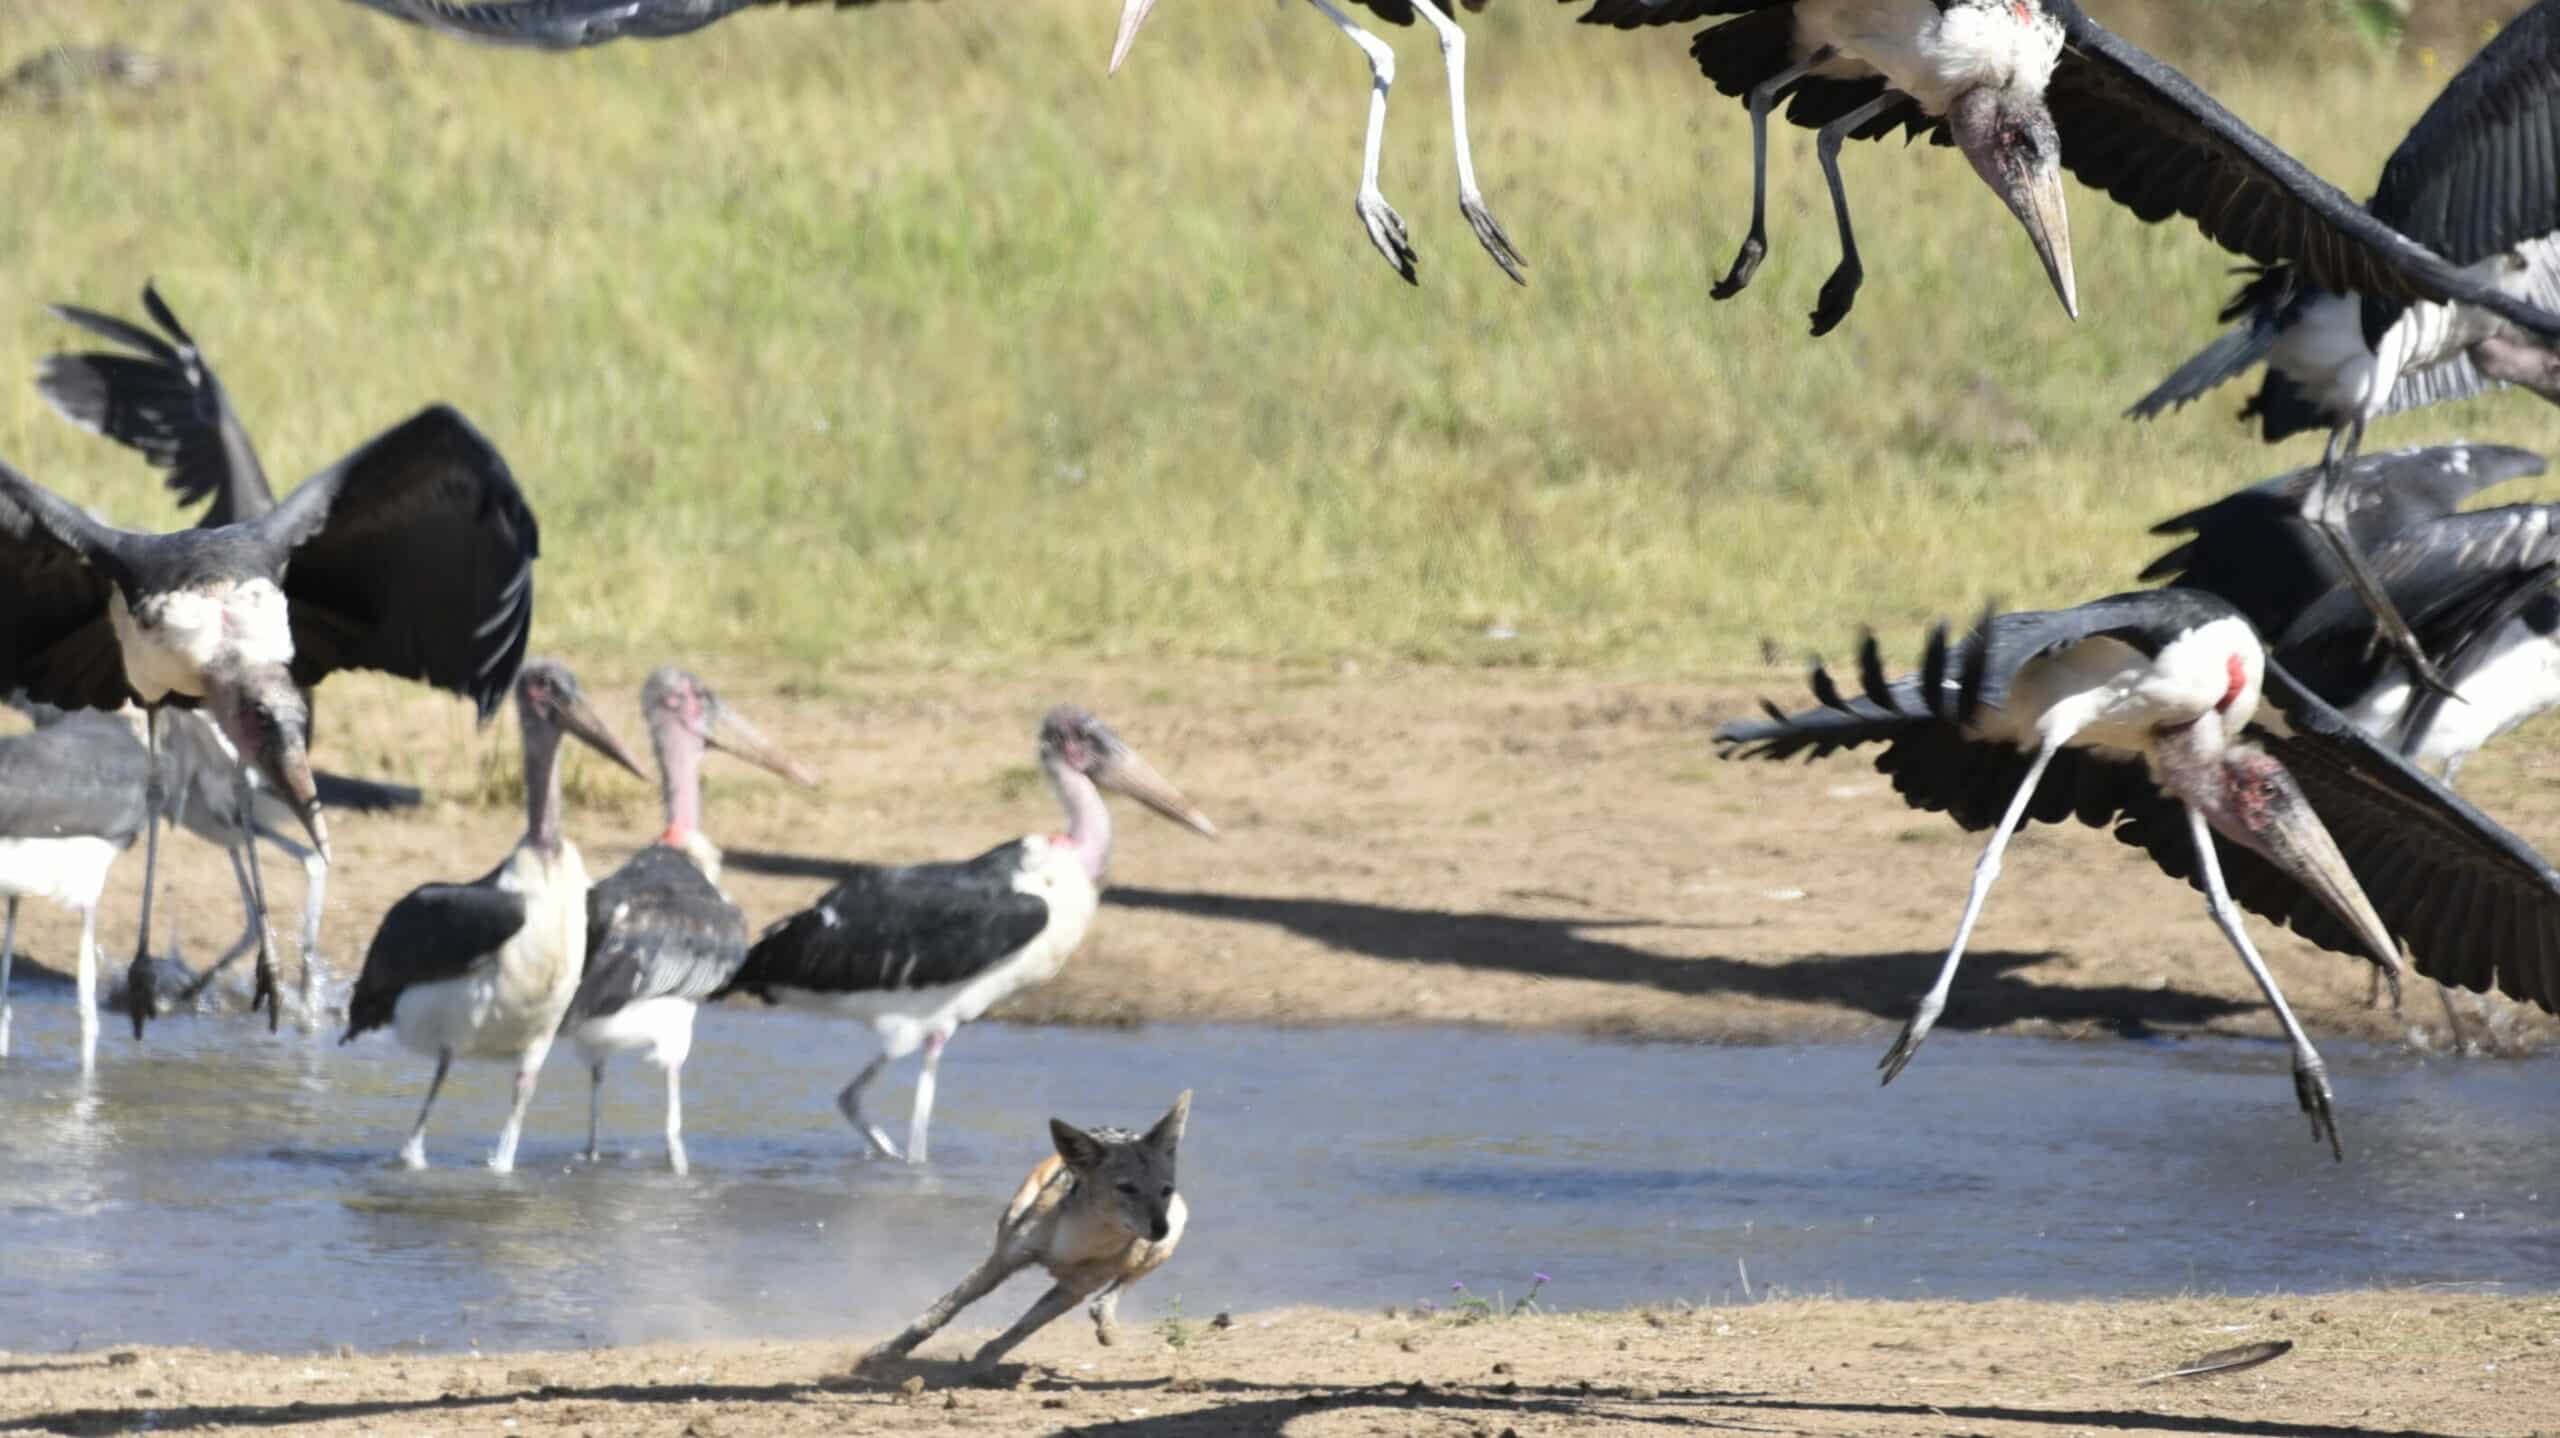 Jackal tries to hunt marabou stork